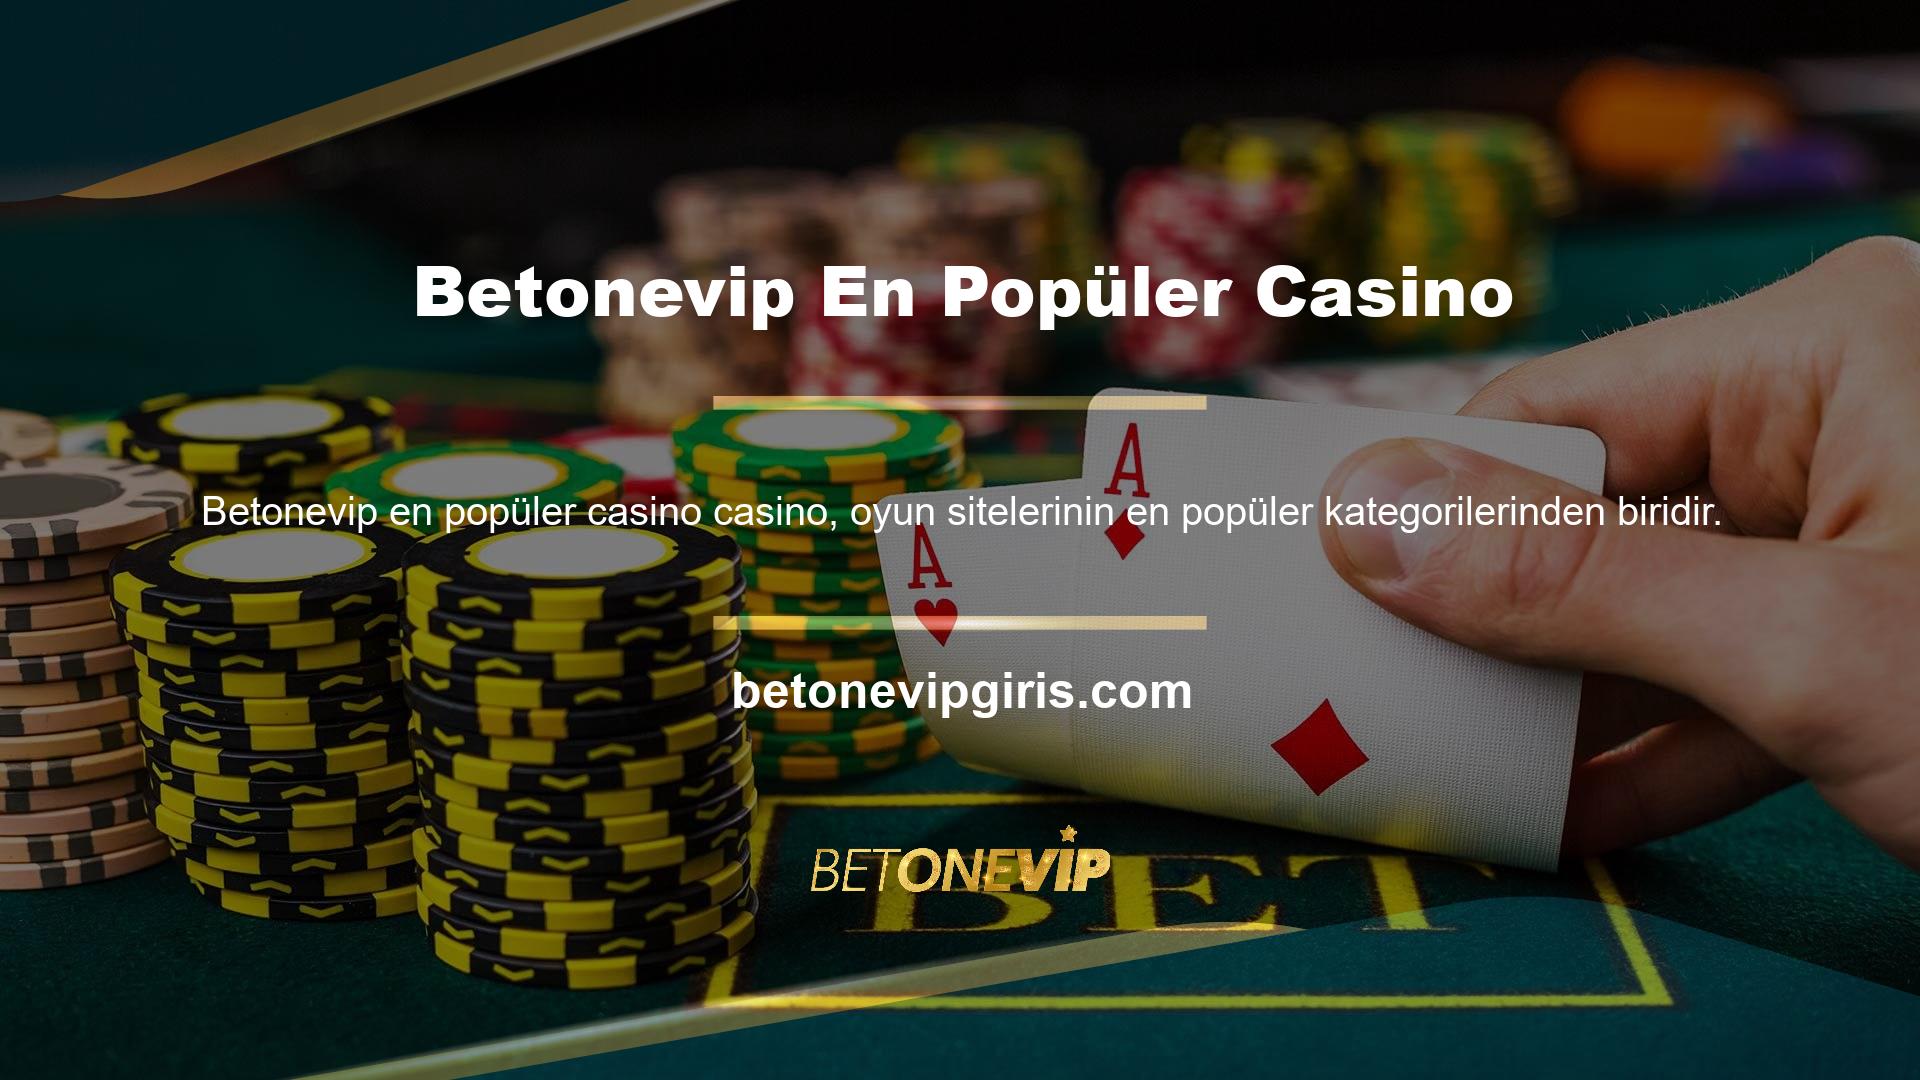 “Casino ve Canlı Casino” bölümünde çeşitli casino sekmeleri bulunmaktadır